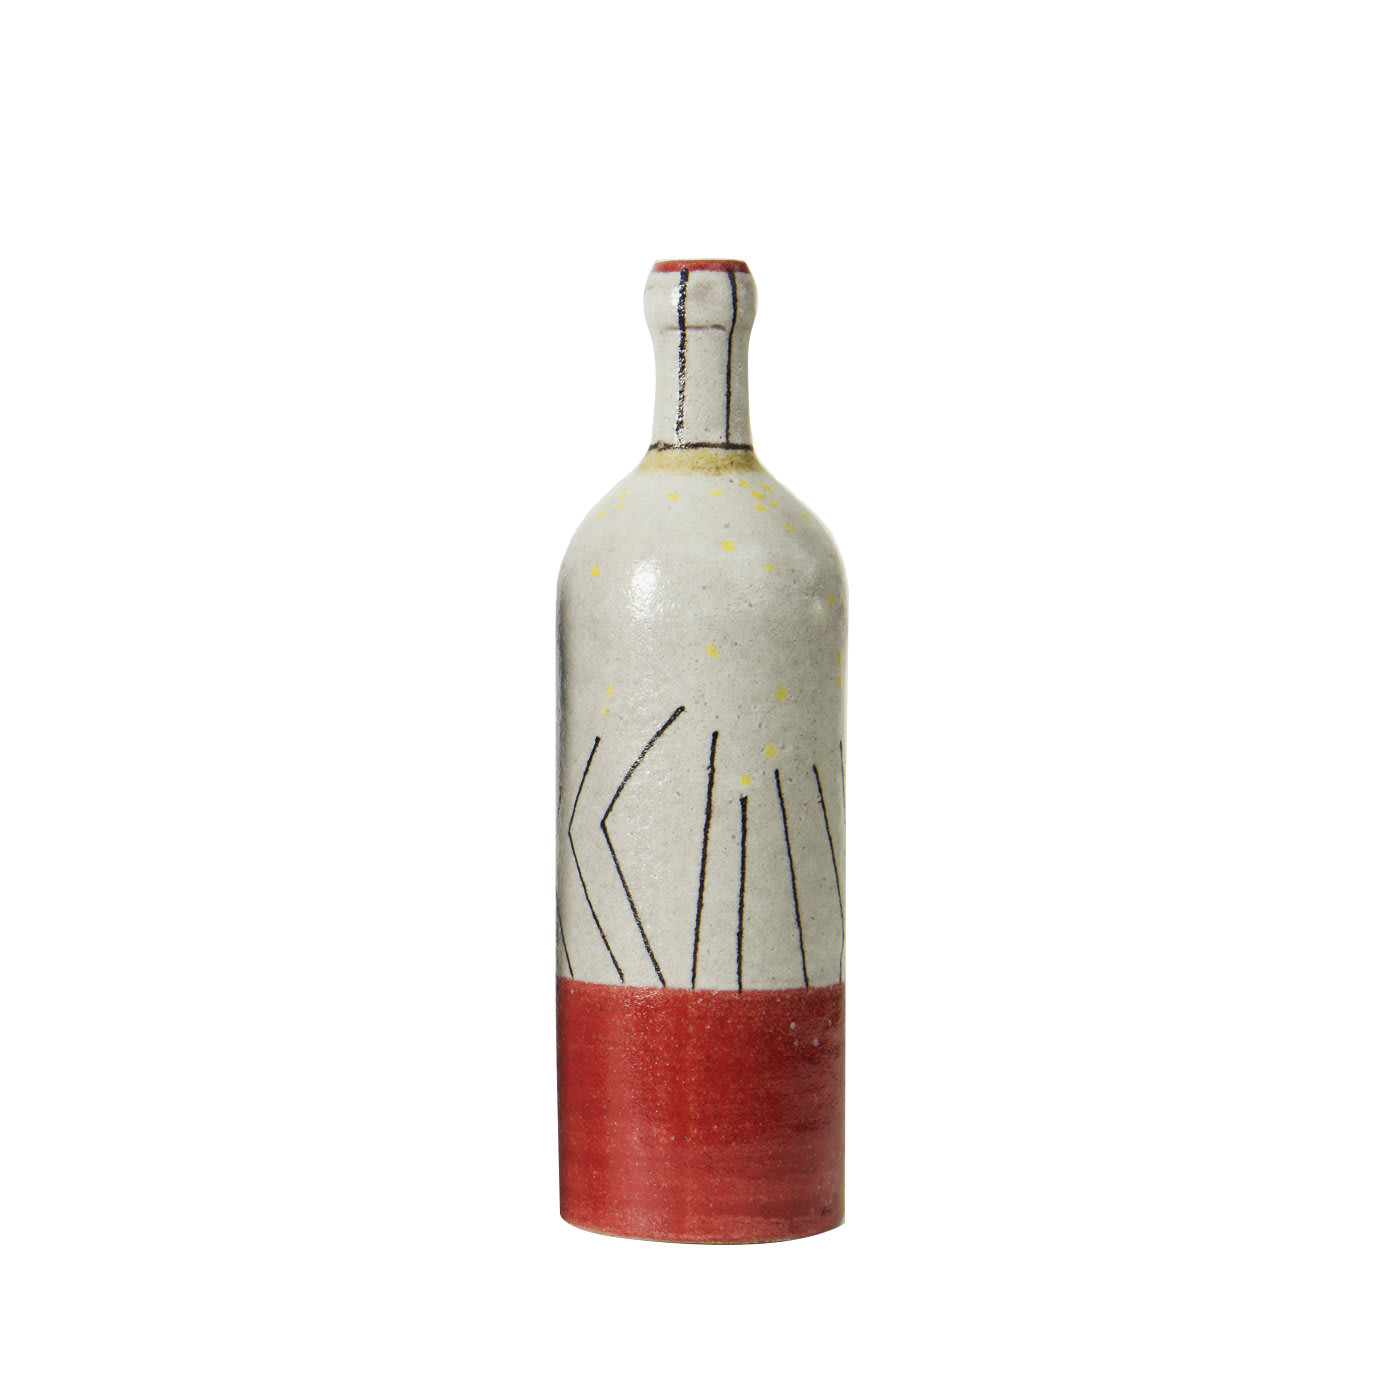 Red and White Bottle - Pierfrancesco Solimene